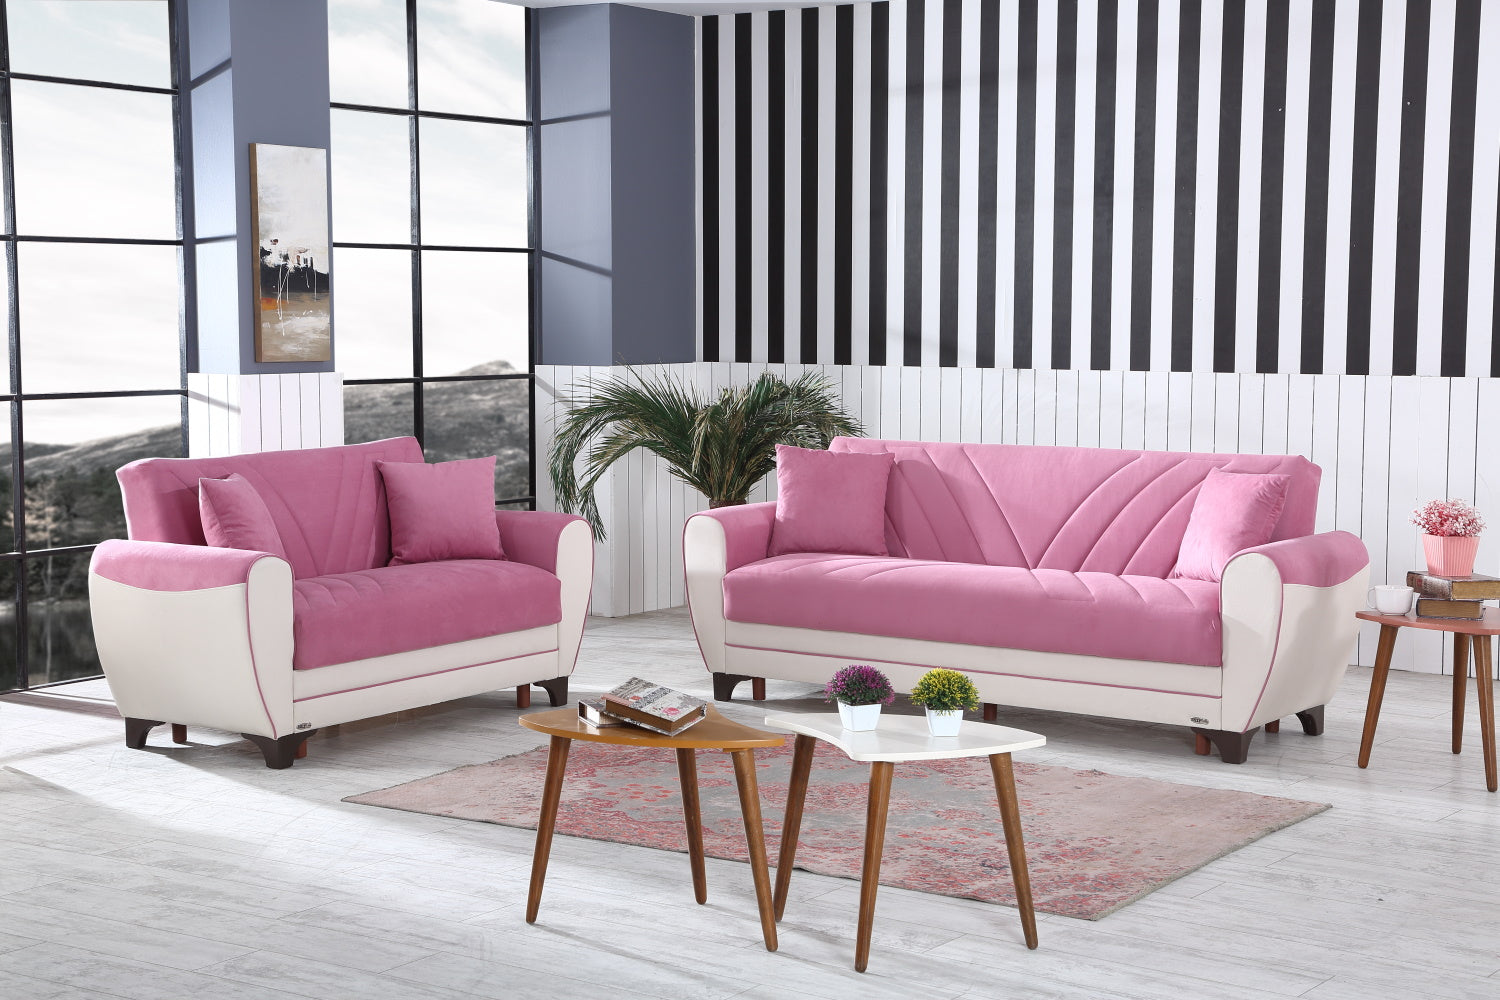 Leydi Convertible Livingroom Sofa Pink